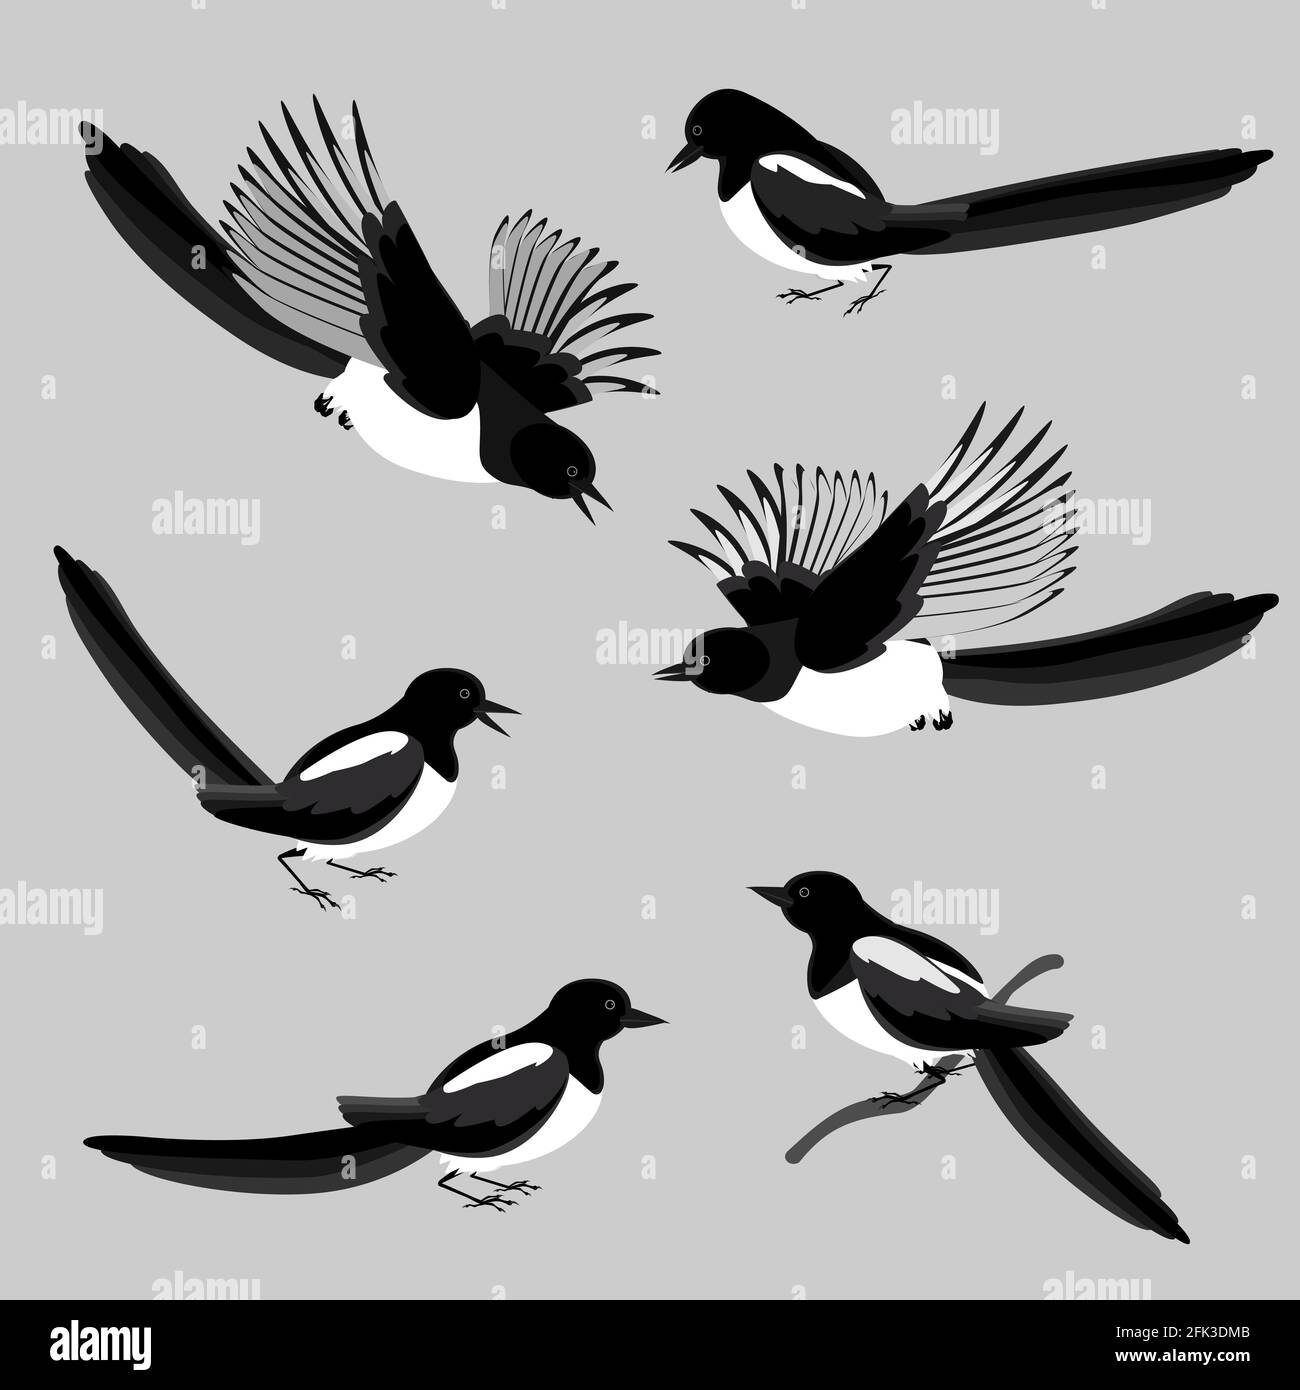 Magpies, un insieme di uccelli in varie pose. Illustrazione vettoriale in gradazioni di colori in bianco e nero isolati su uno sfondo grigio neutro. Illustrazione Vettoriale